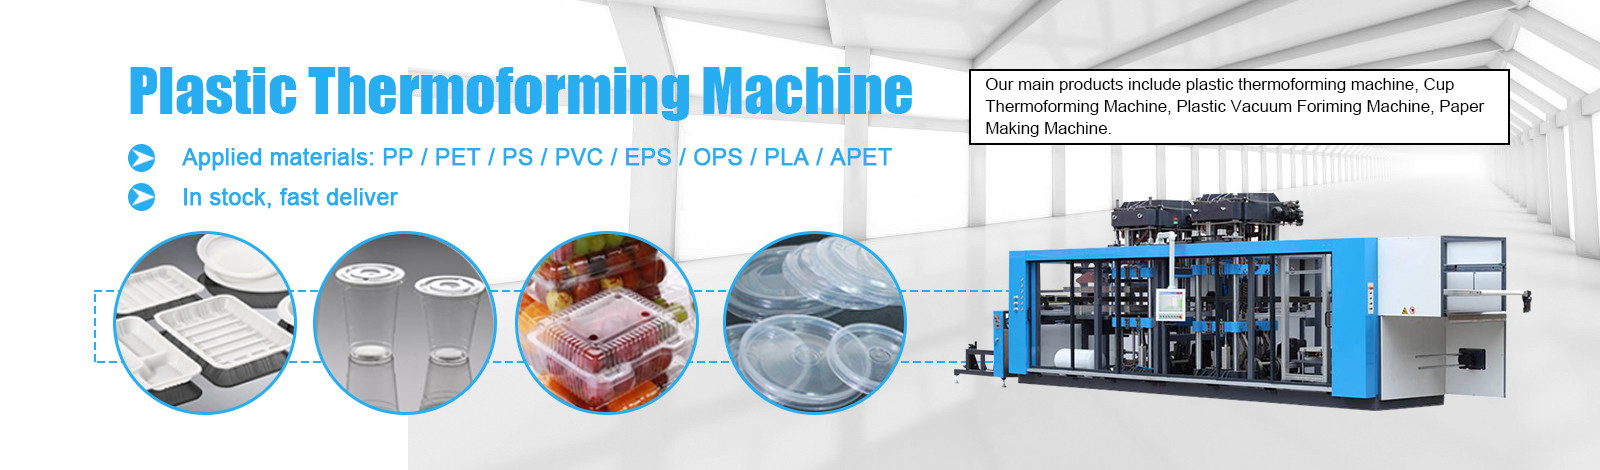 प्लास्टिक थर्मोफॉर्मिंग मशीन